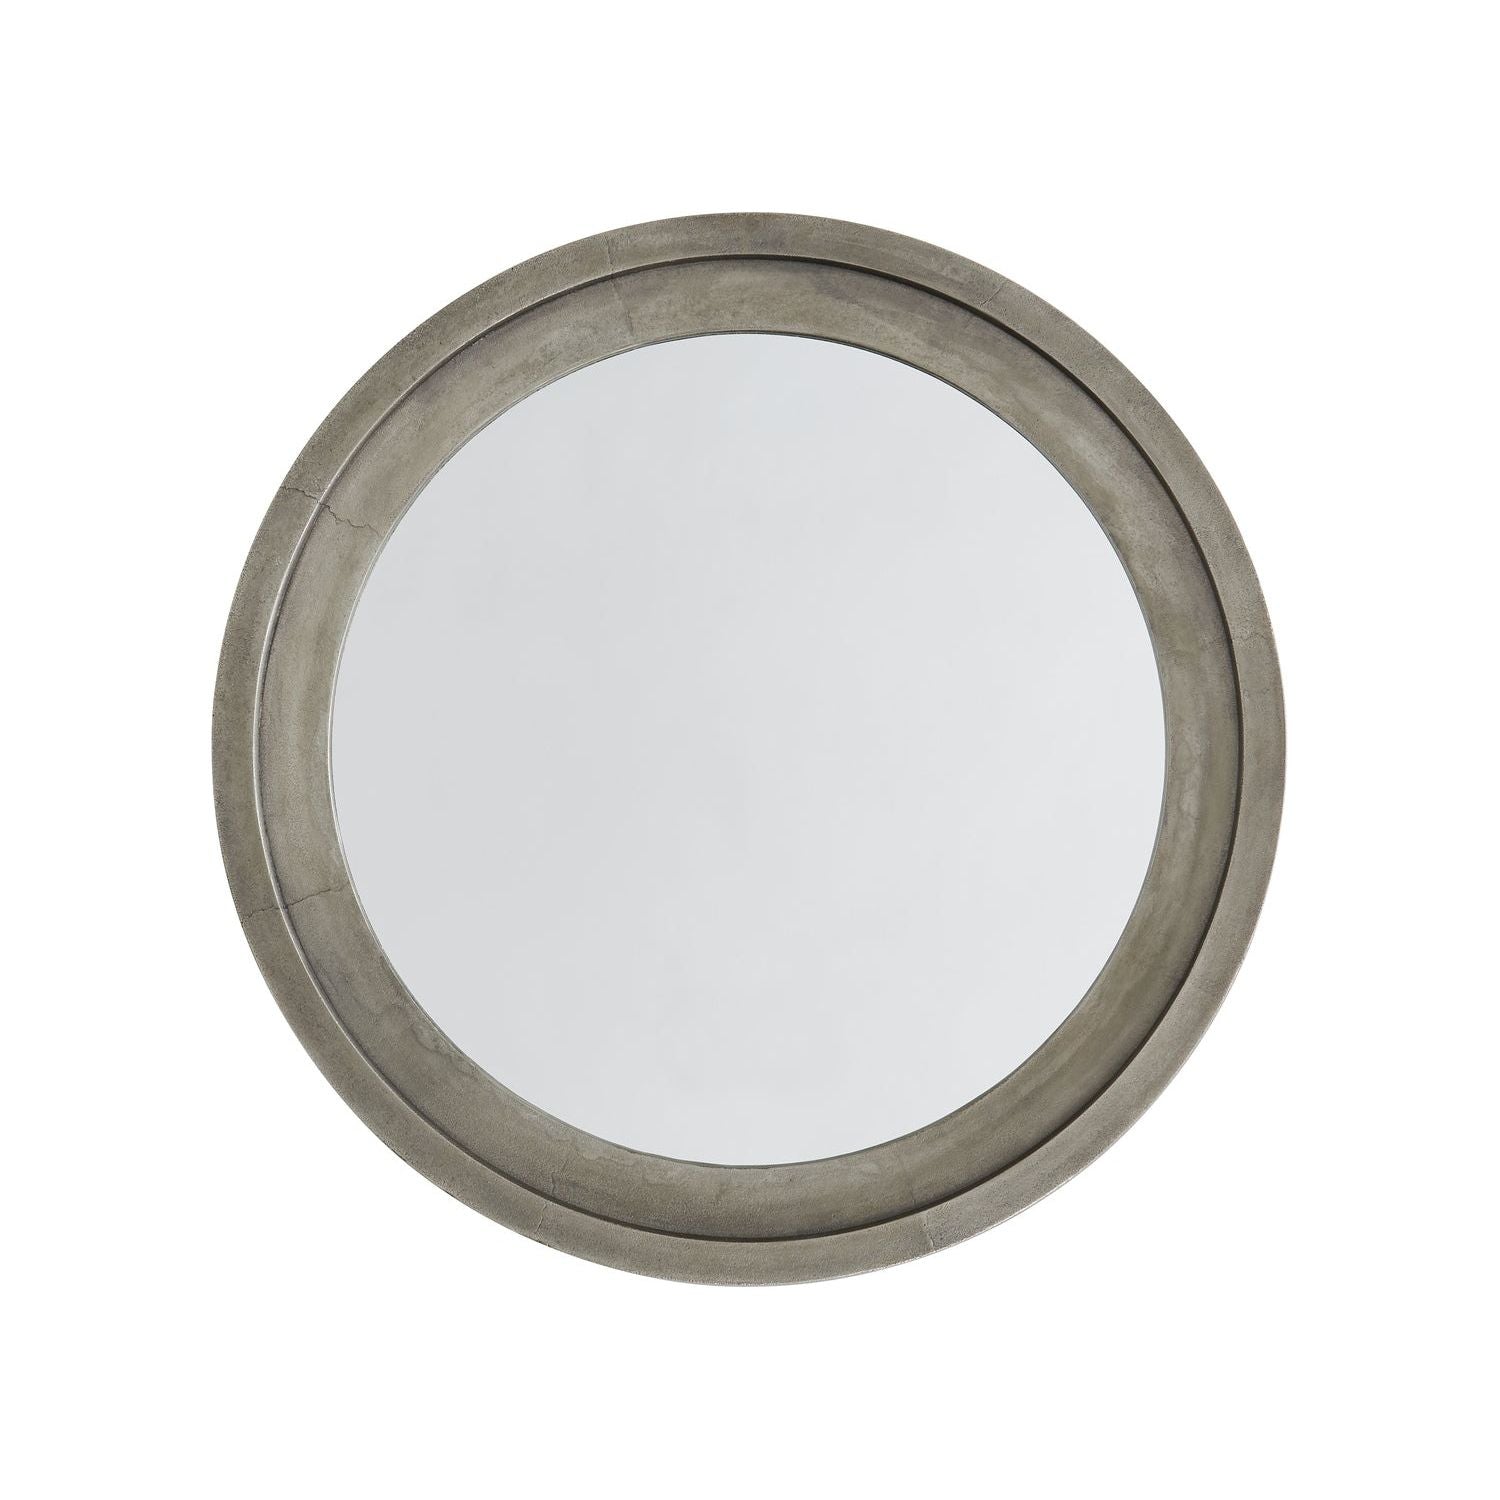 Decorative Cast Aluminum Mirror